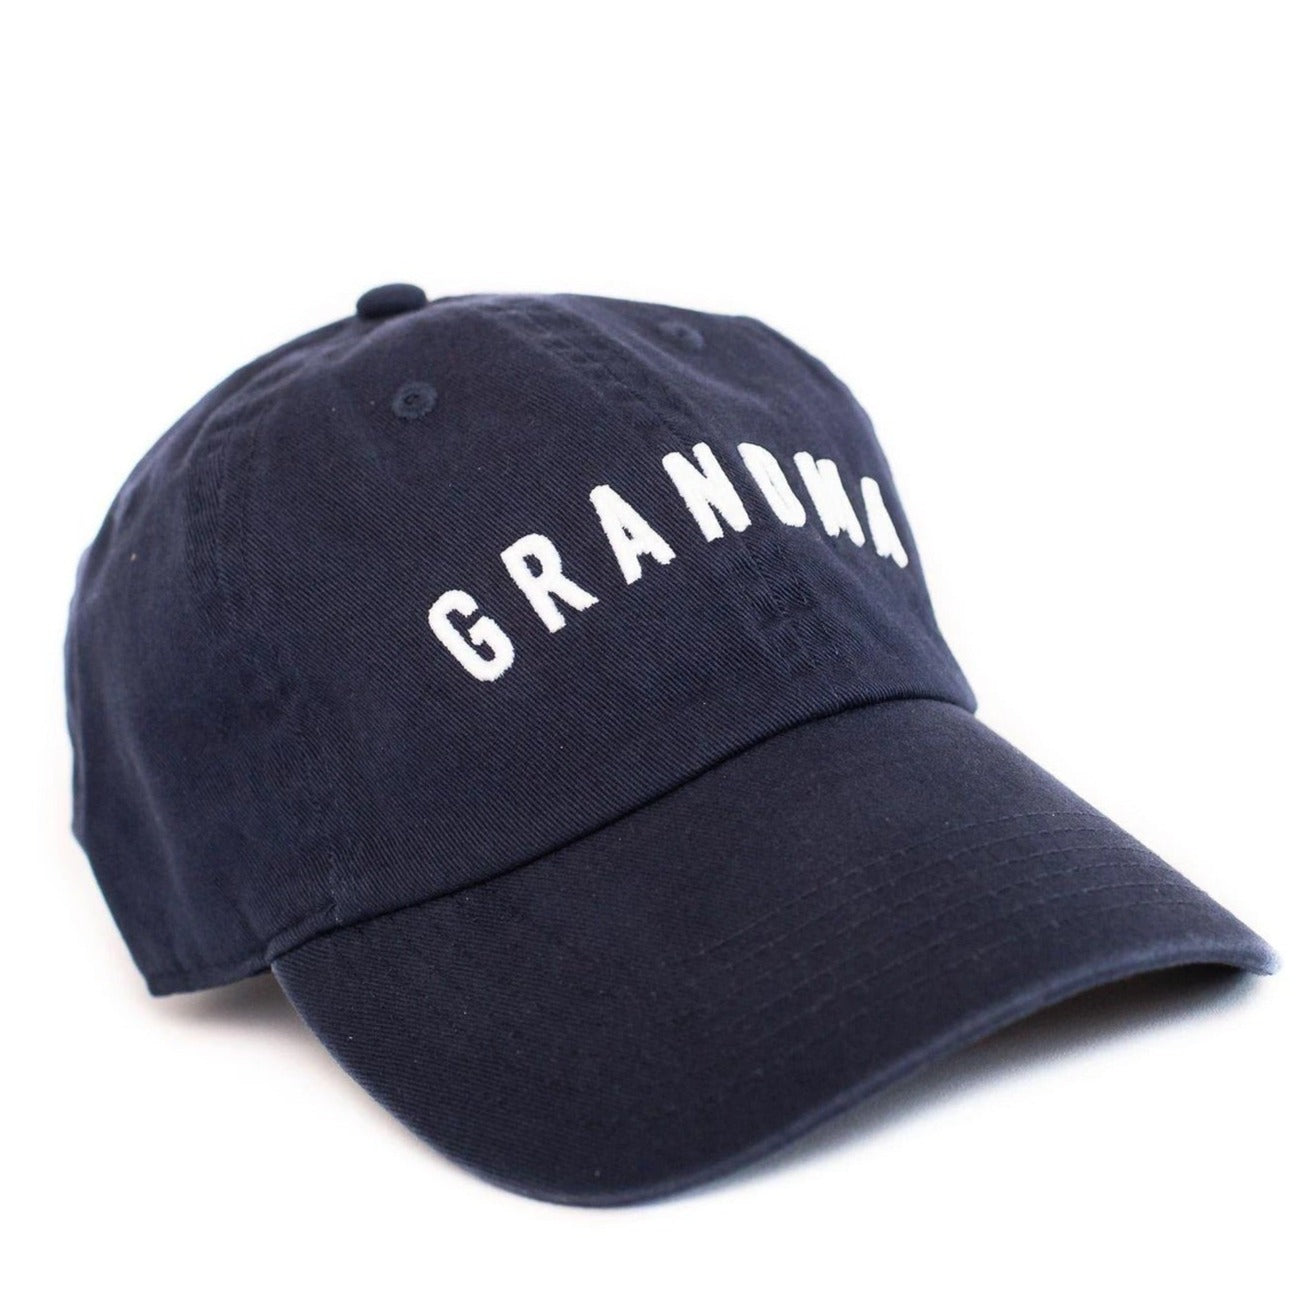 grandma hat